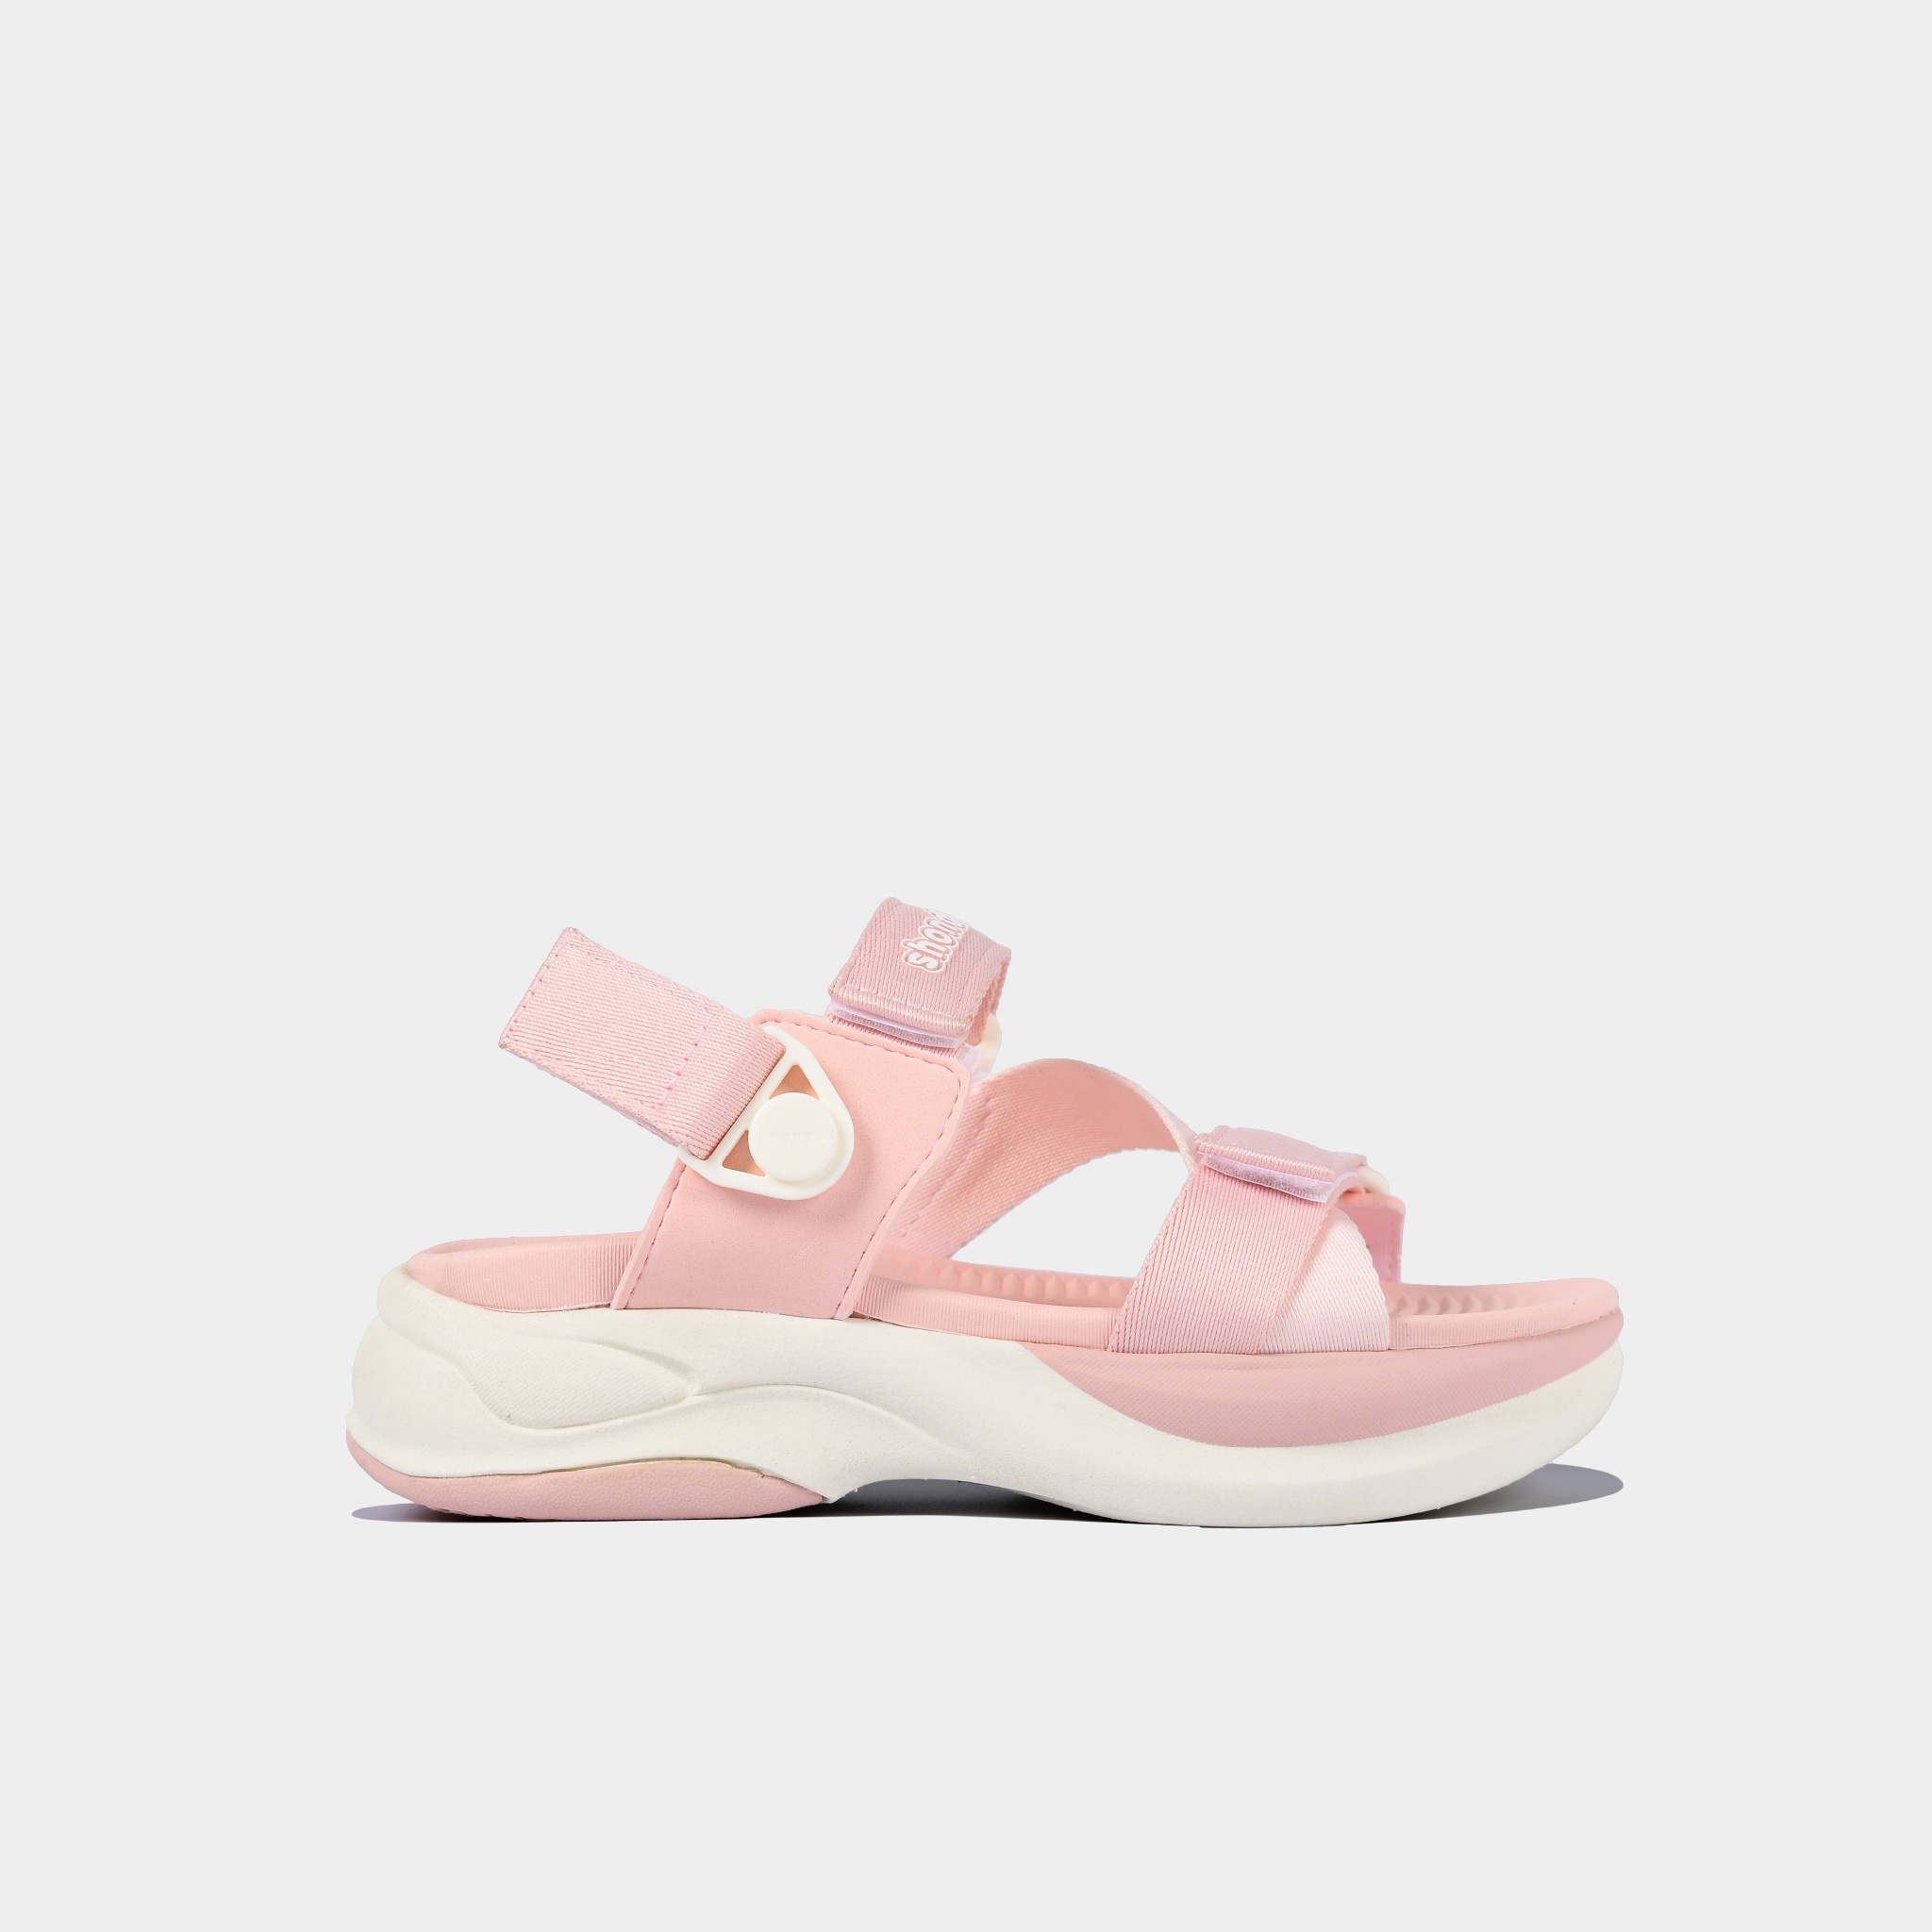 Sandals F8B trắng hồng